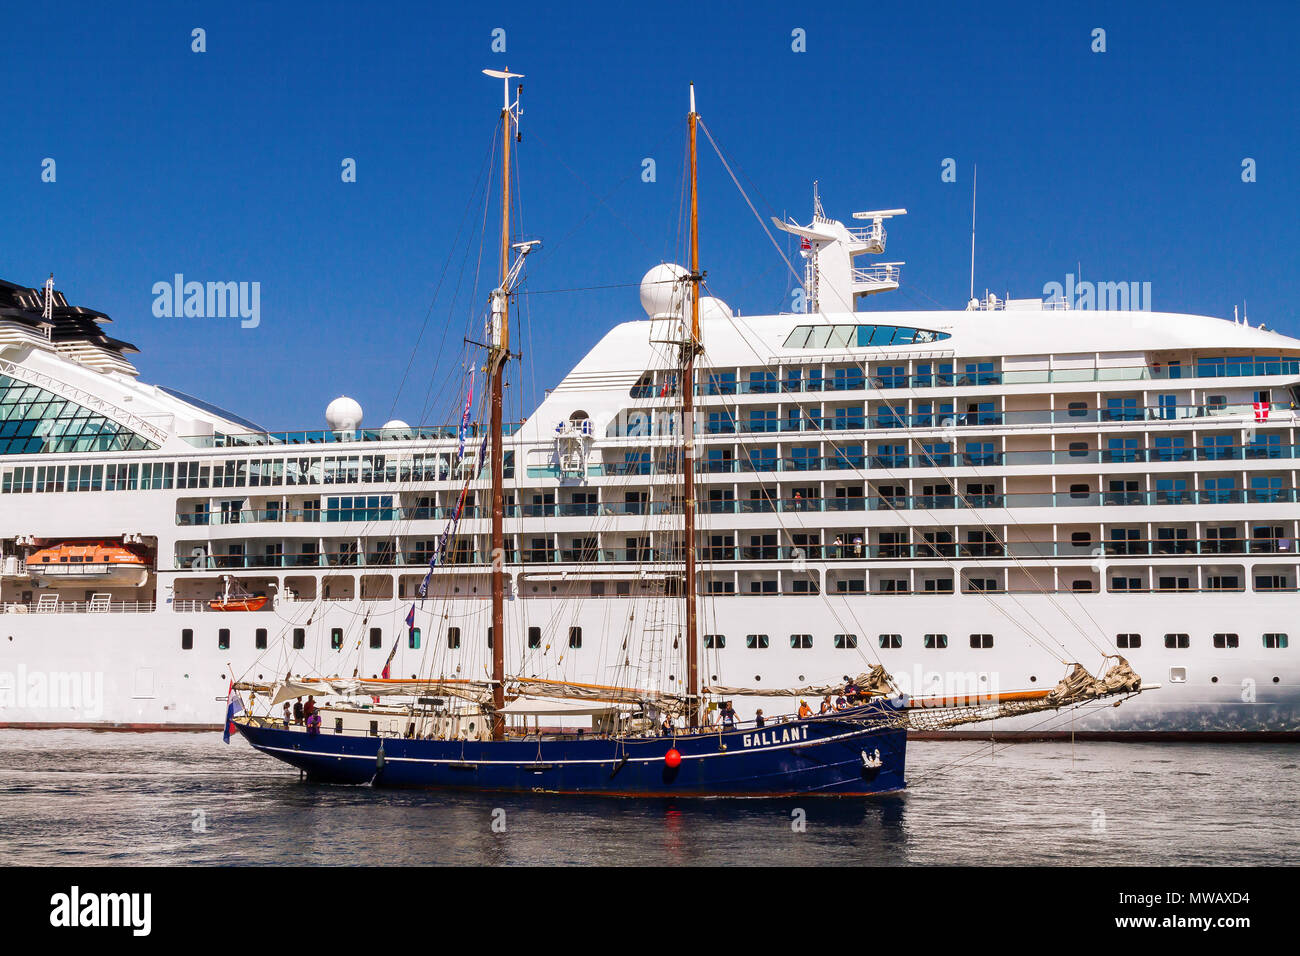 Tall Ships Race Bergen 2014. La goletta olandese "Gallant' entrando in porto di Bergen, nella parte anteriore della nave da crociera Seabourn Quest. Foto Stock